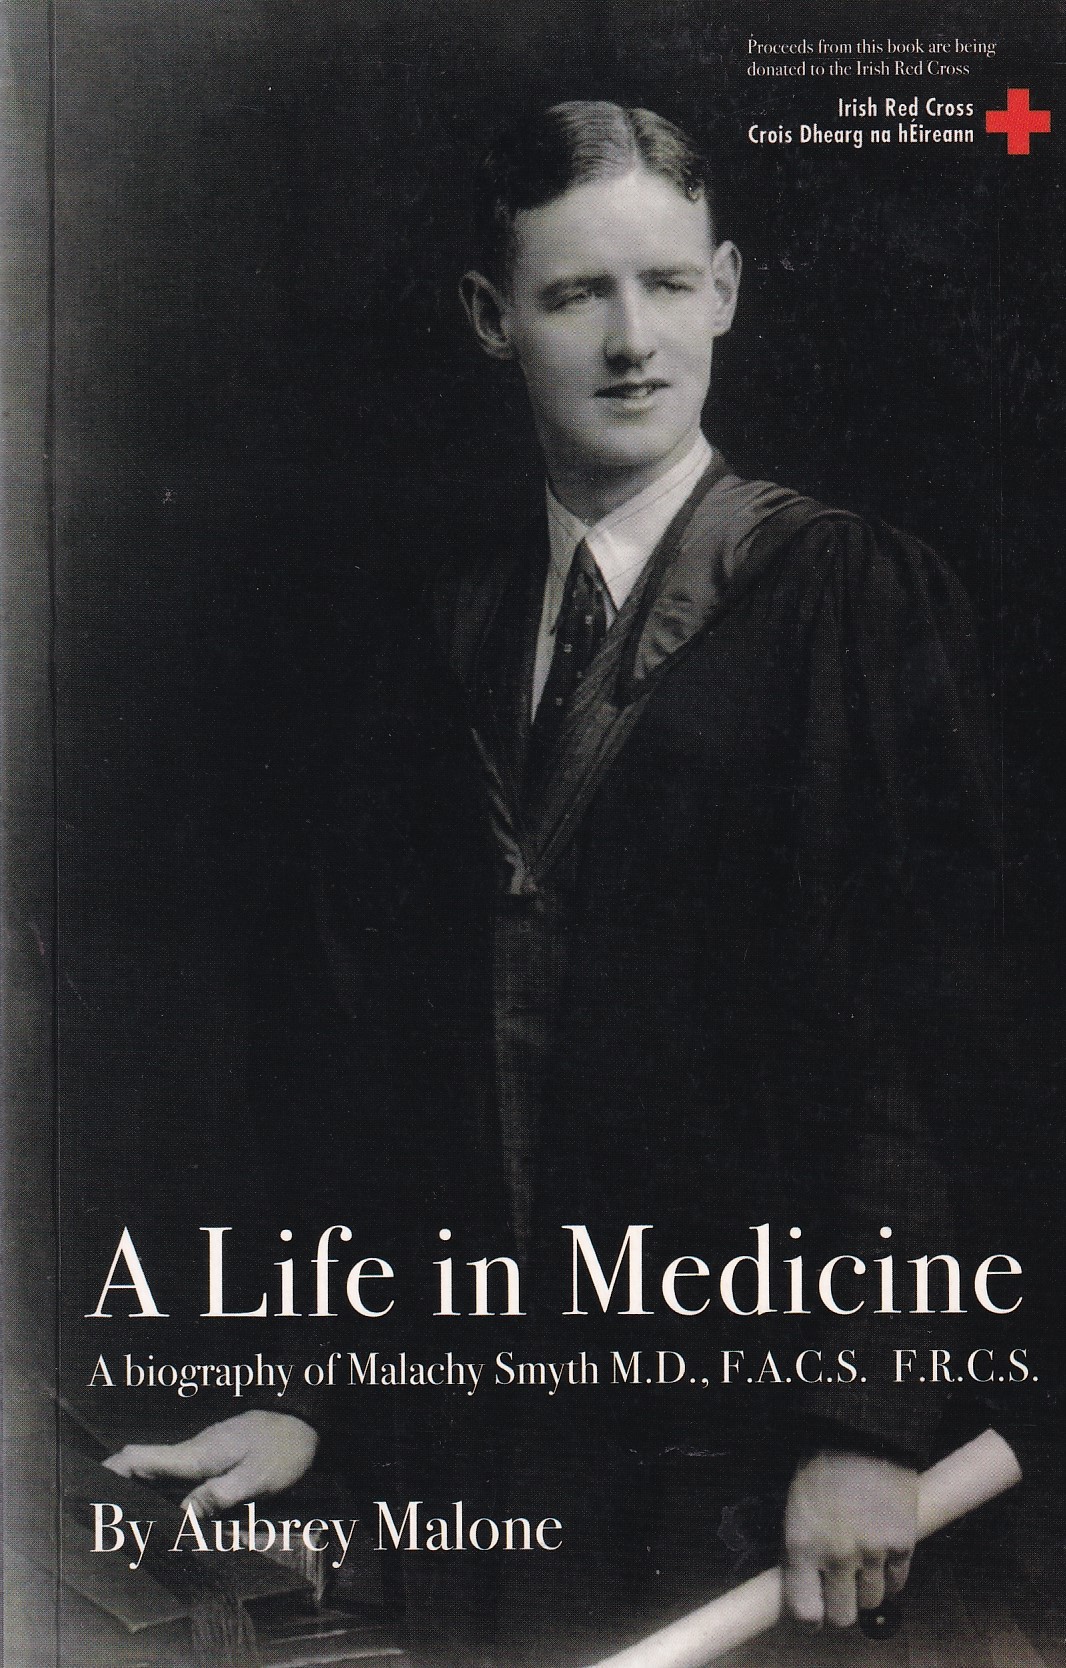 A Life in Medicine; A biography of Malachy Smyth by Aubrey Malone